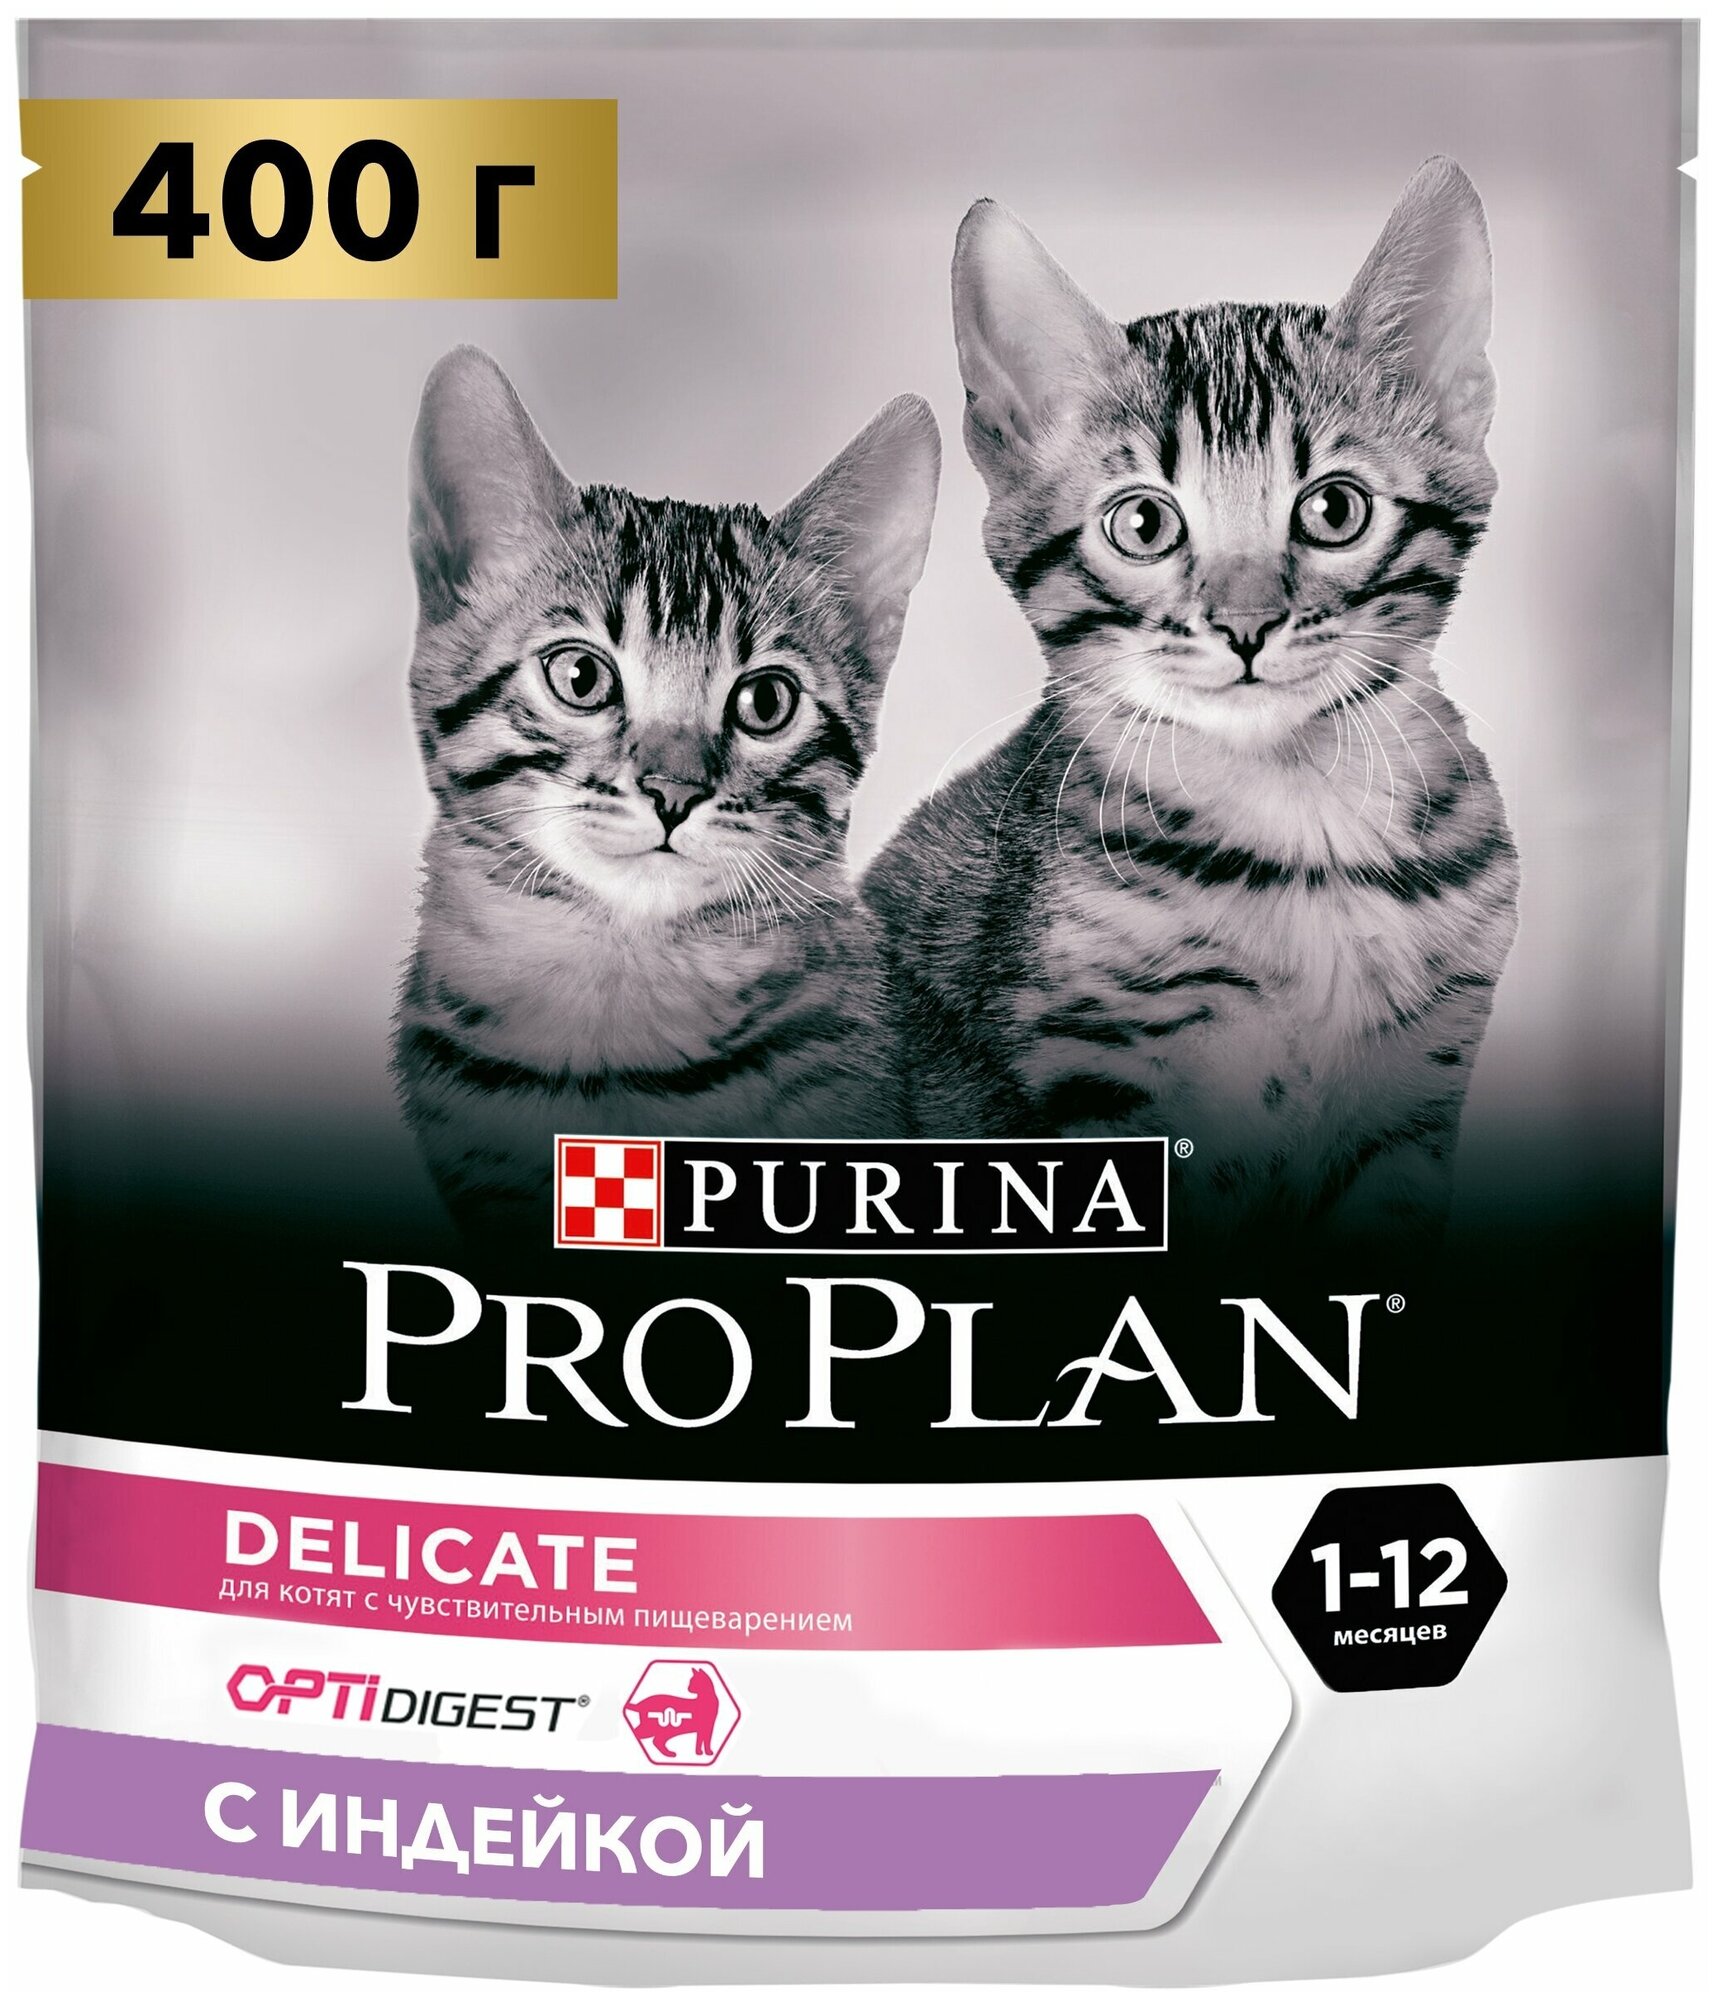 Сухой корм для котят Pro Plan с чувствительным пищеварением или с особыми предпочтениями в еде с высоким содержанием индейки 8 шт. х 400 г